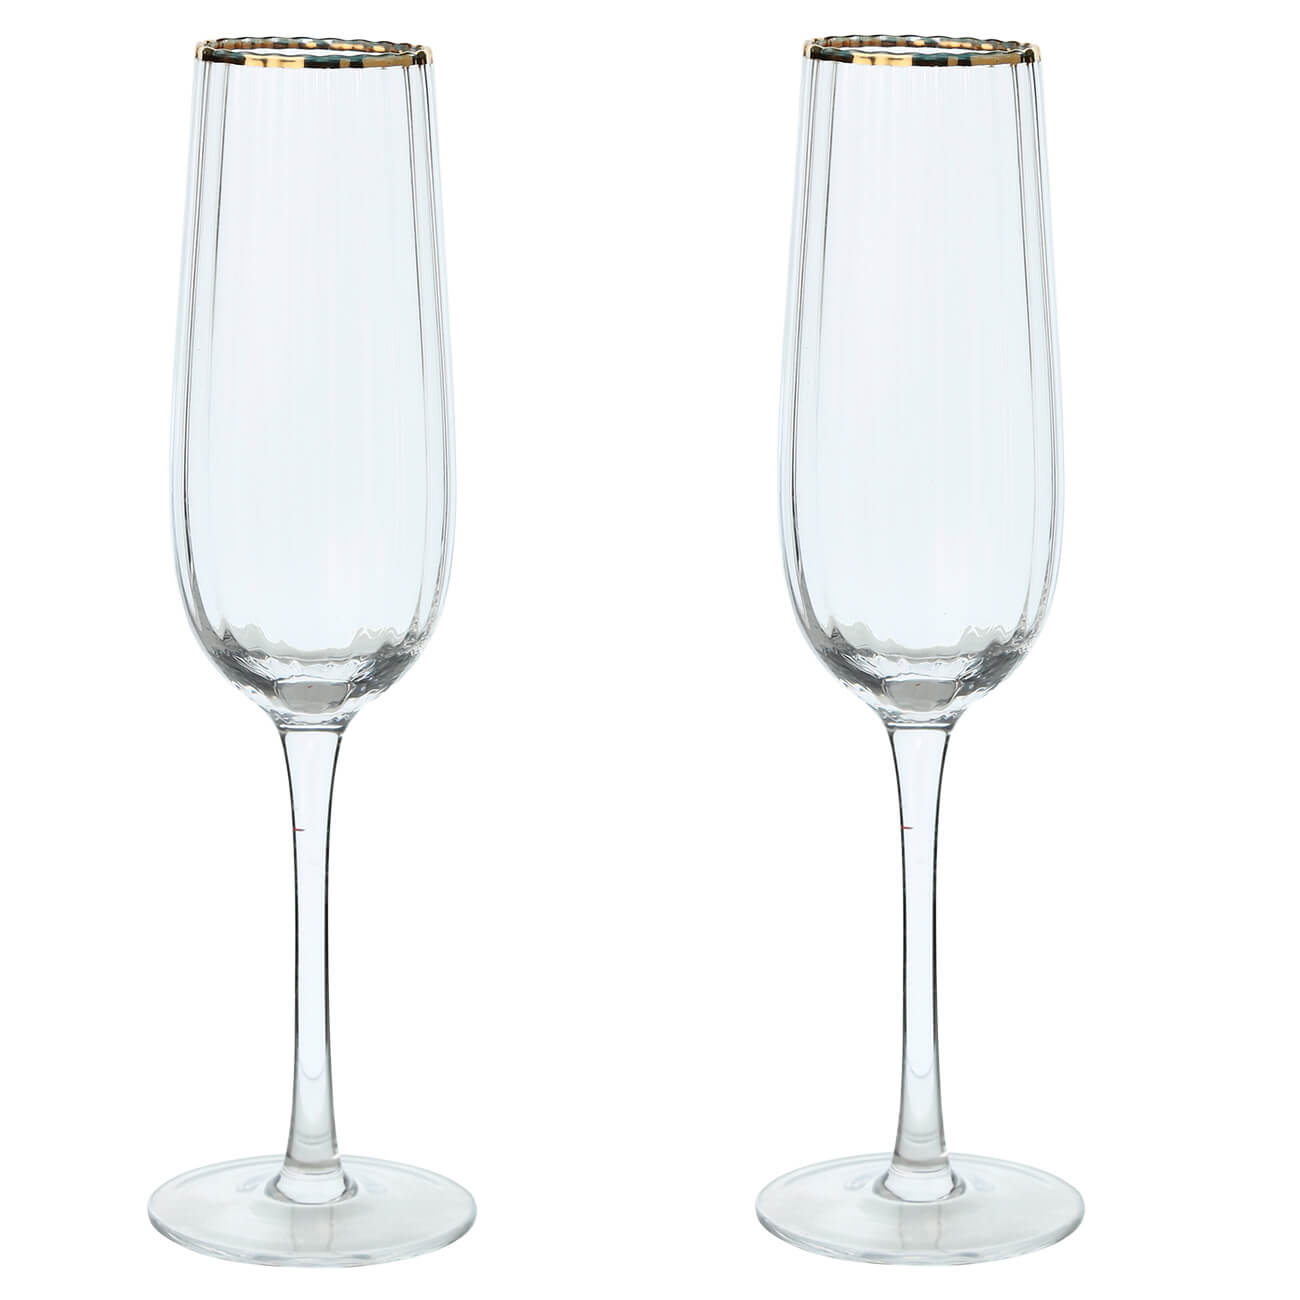 Бокал для шампанского, 275 мл, 2 шт, стекло, с золотистым кантом, Lombardy R Gold стакан 340 мл стекло р с золотистым кантом rhomb gold